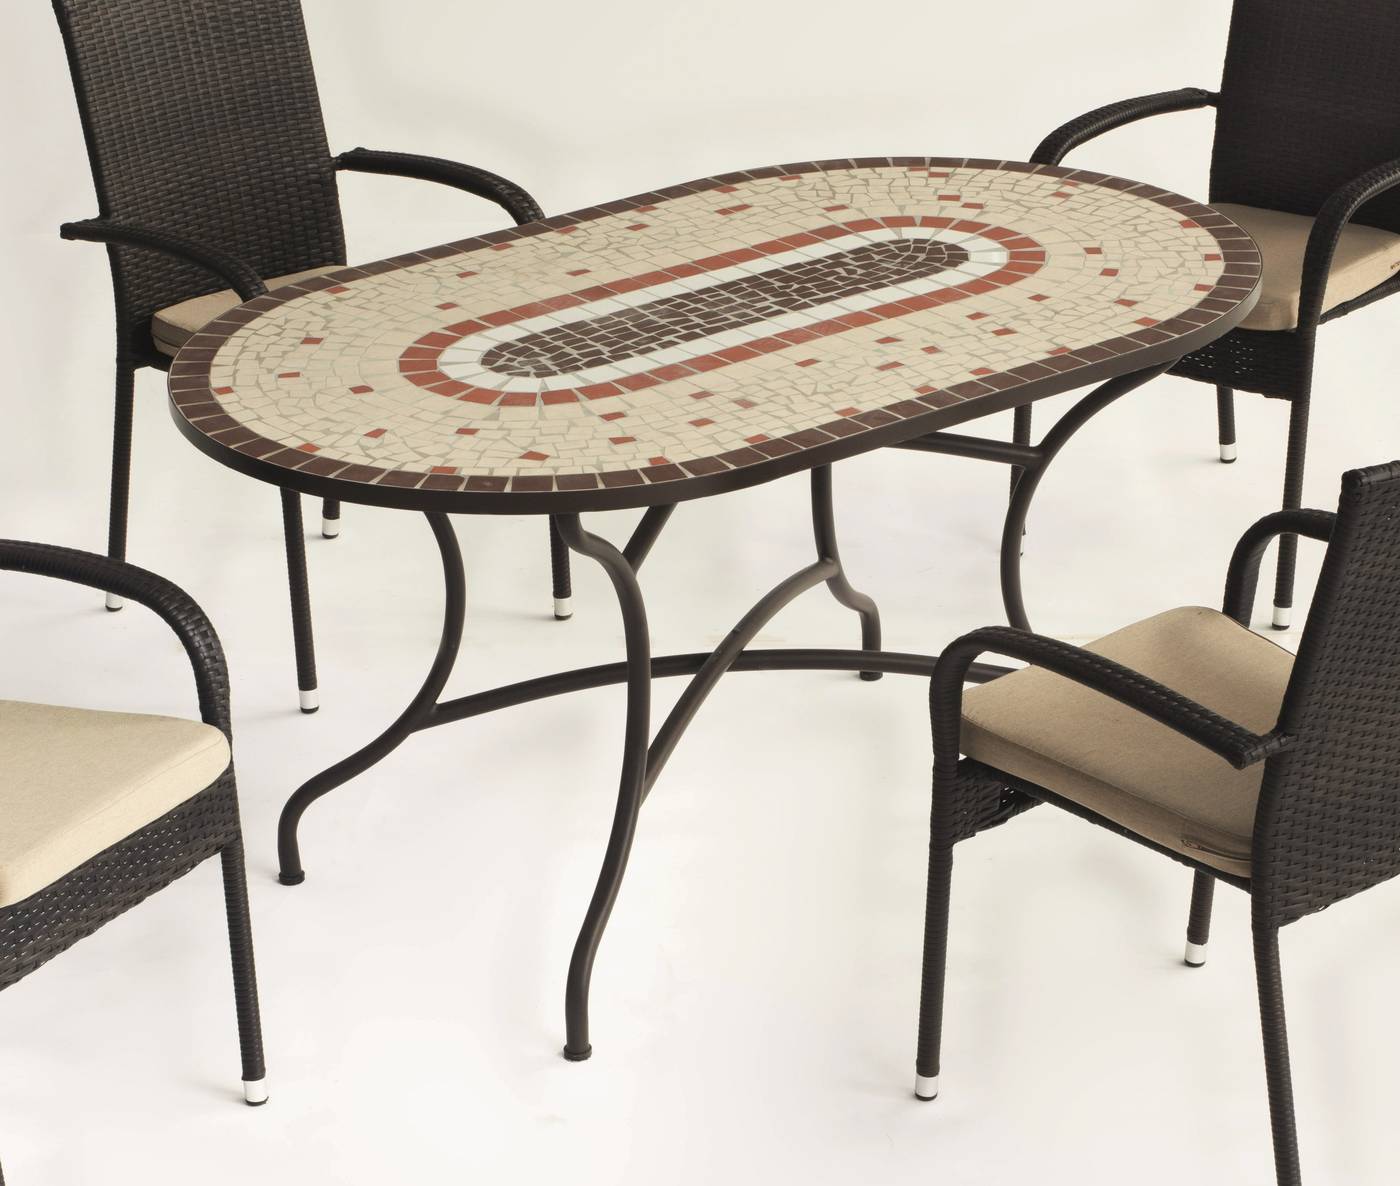 Conjunto Mosaico Malaya-Shifa - Conjunto de forja color bronce: mesa con tablero mosaico de 150 cm + 4 sillones con cojines asiento.<br/><br/><b>OFERTA VÁLIDA HASTA EL 31 DE MAYO O FIN DE EXISTENCIAS</b>.